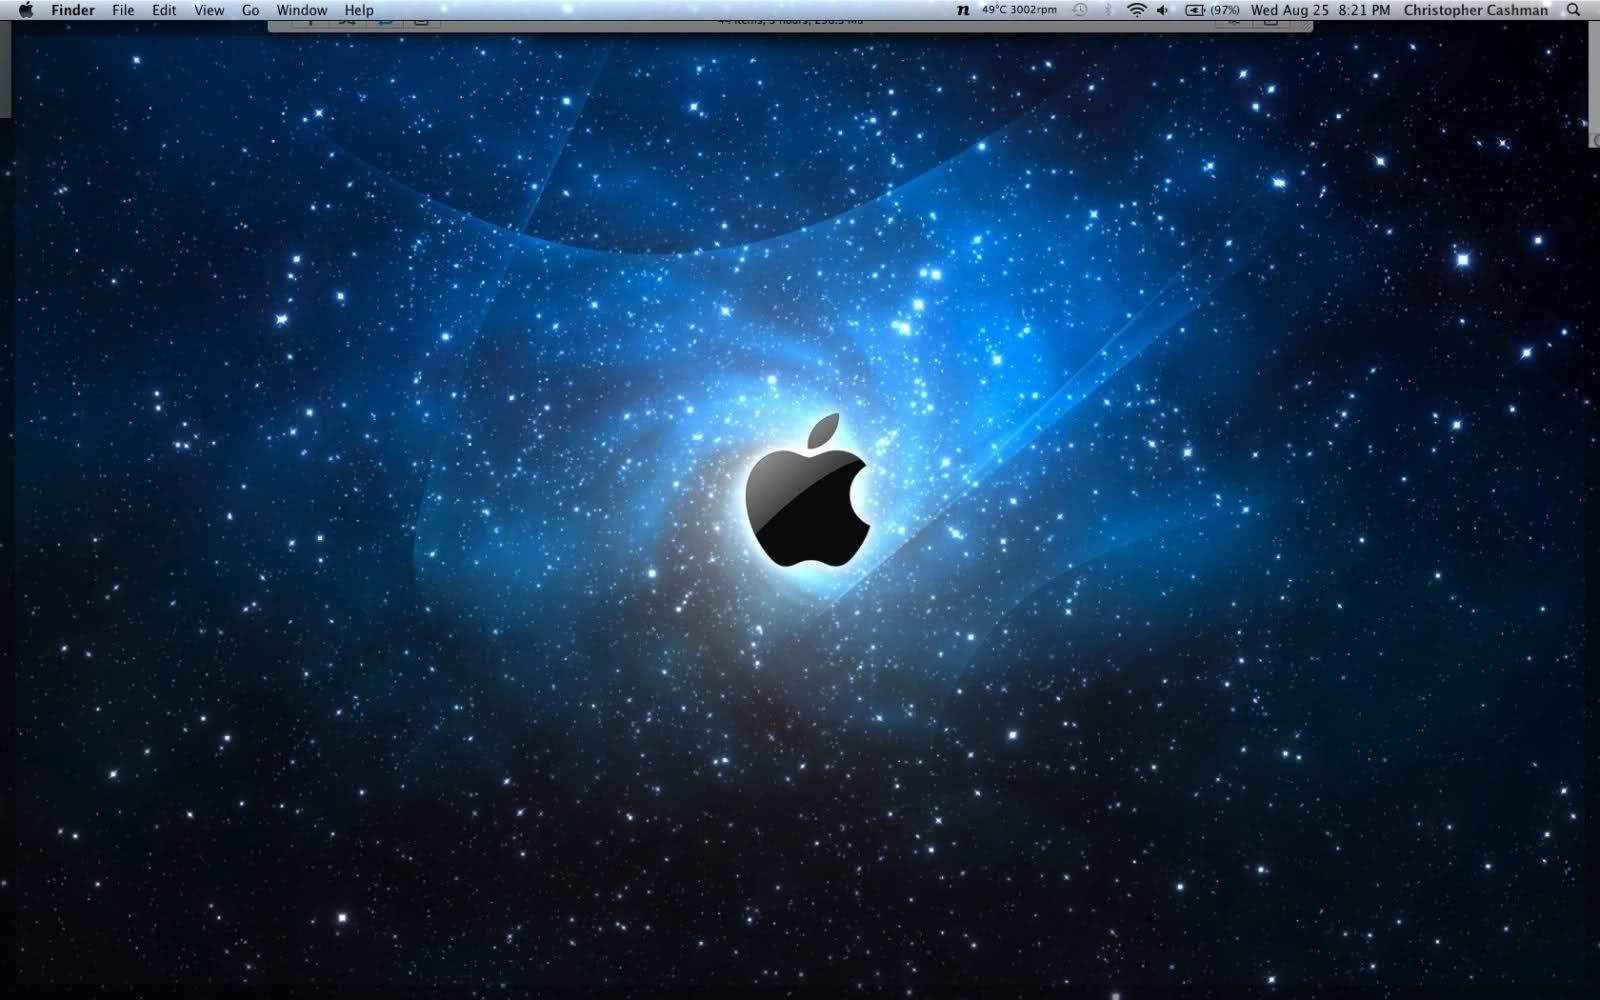 New Macbook Pro Desktop Backgrounds - 1600x1000 Wallpaper 